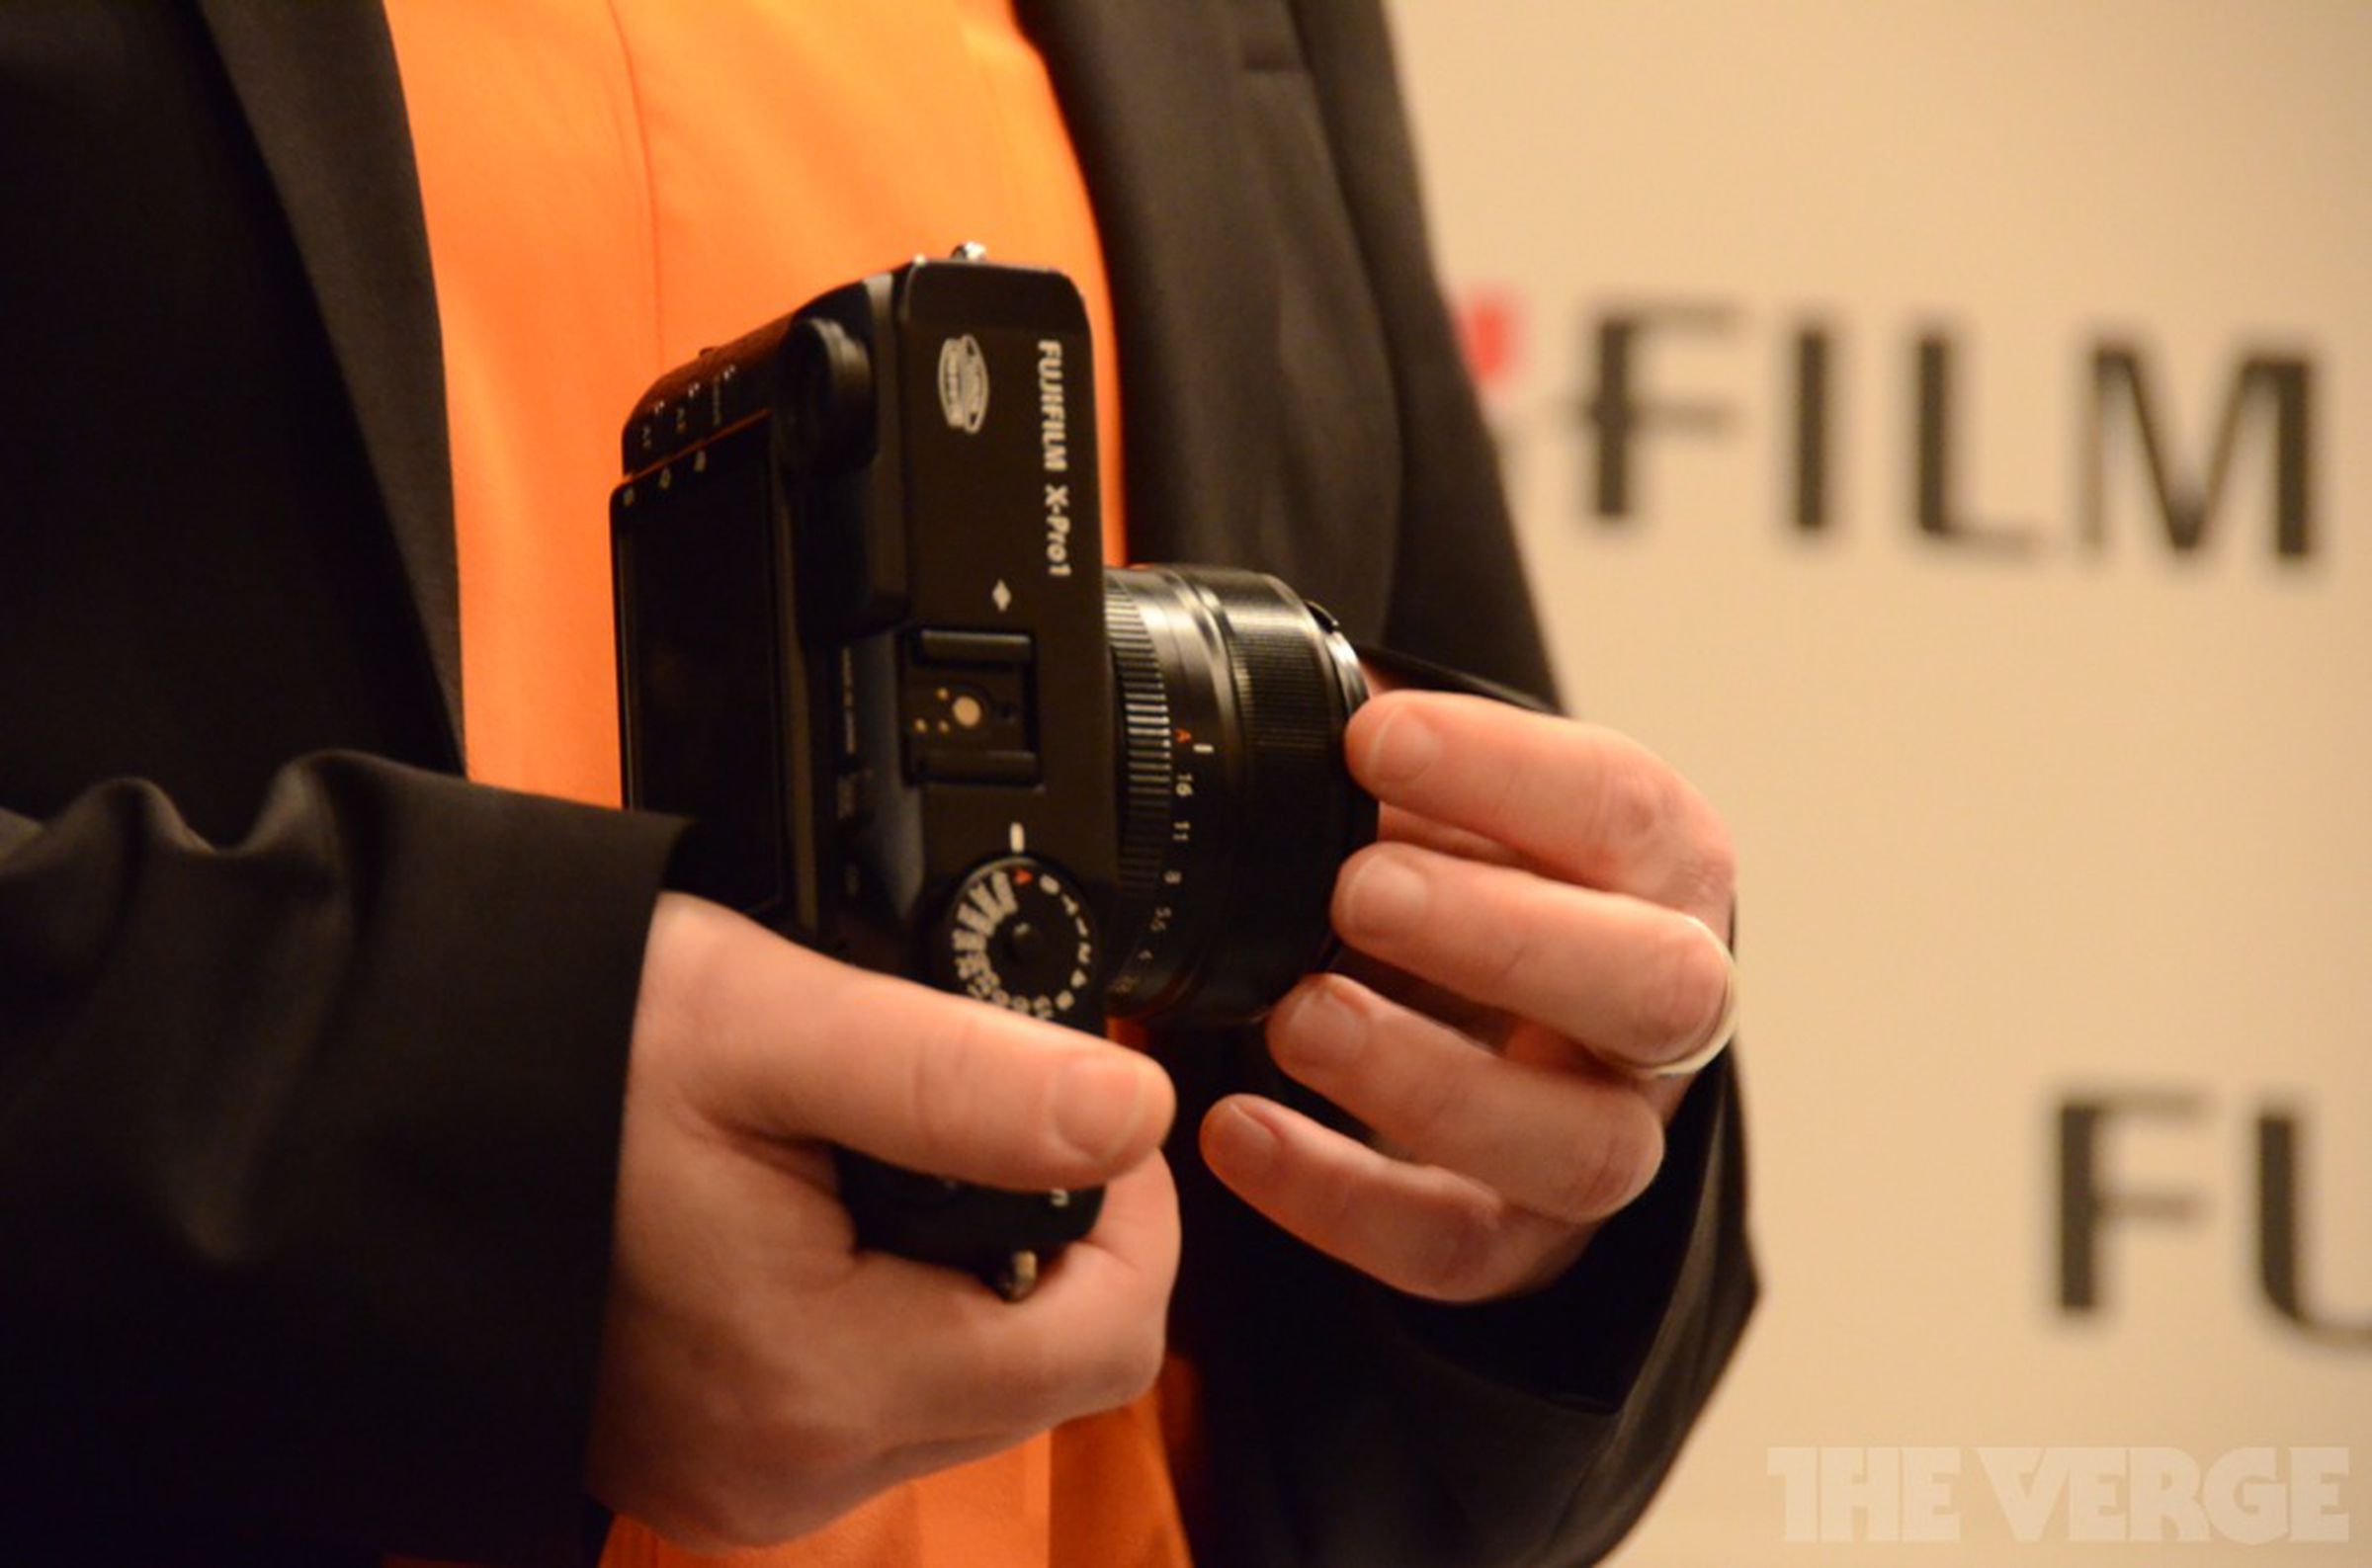 Fujifilm X-Pro1 announcement pictures